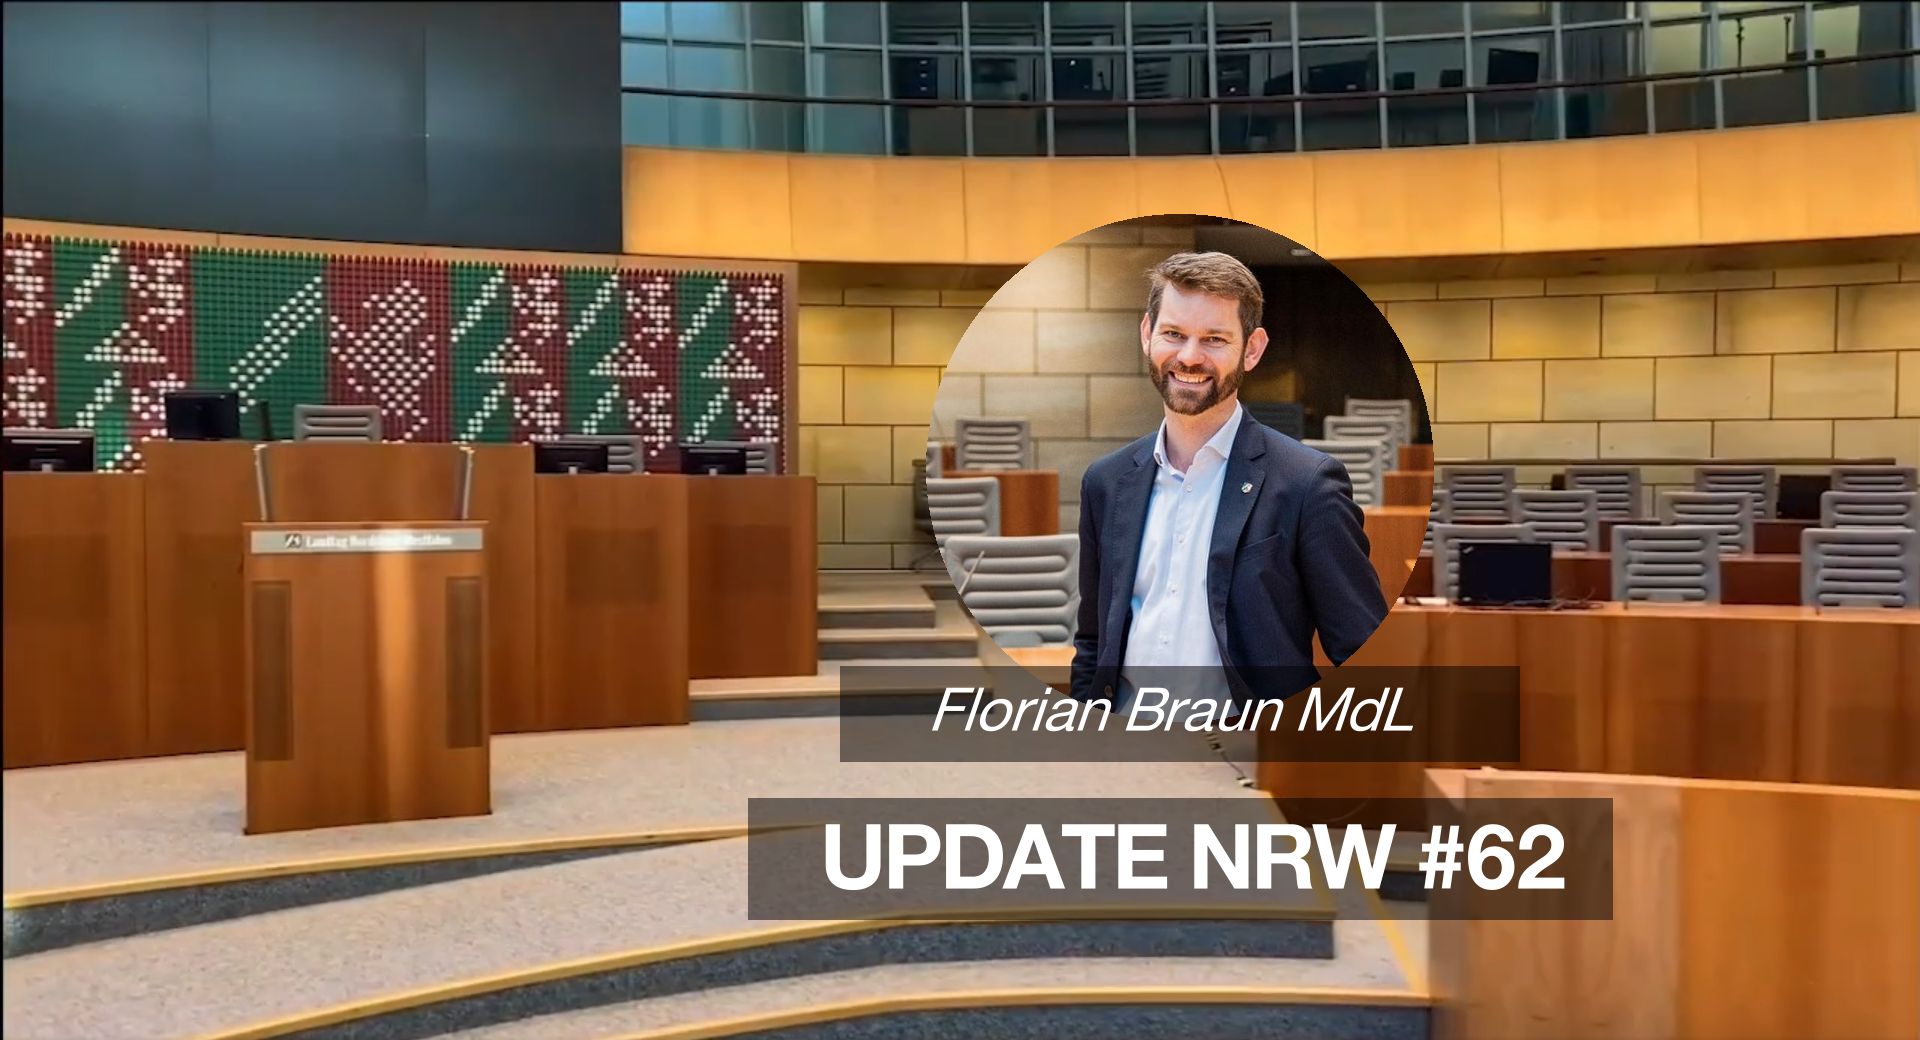 Florian Braun MdL: Update NRW #62